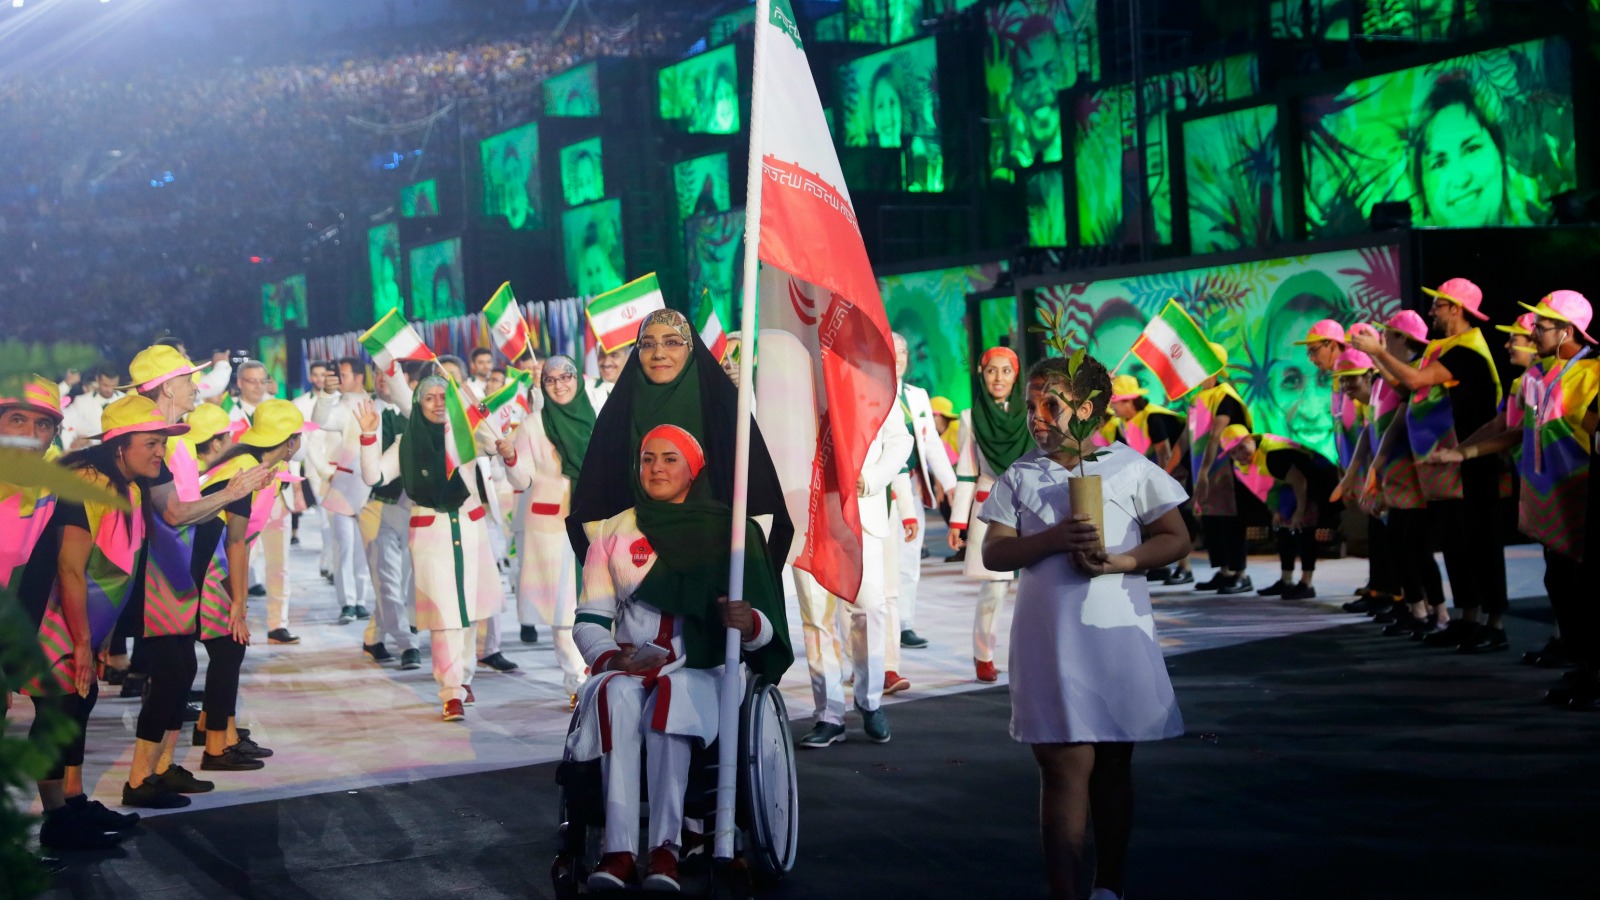 گاف خبرگزاری آسوشیتد پرس : زهرا نعمتی نخستین پرچمدار زن کاروان المپیک ایران!